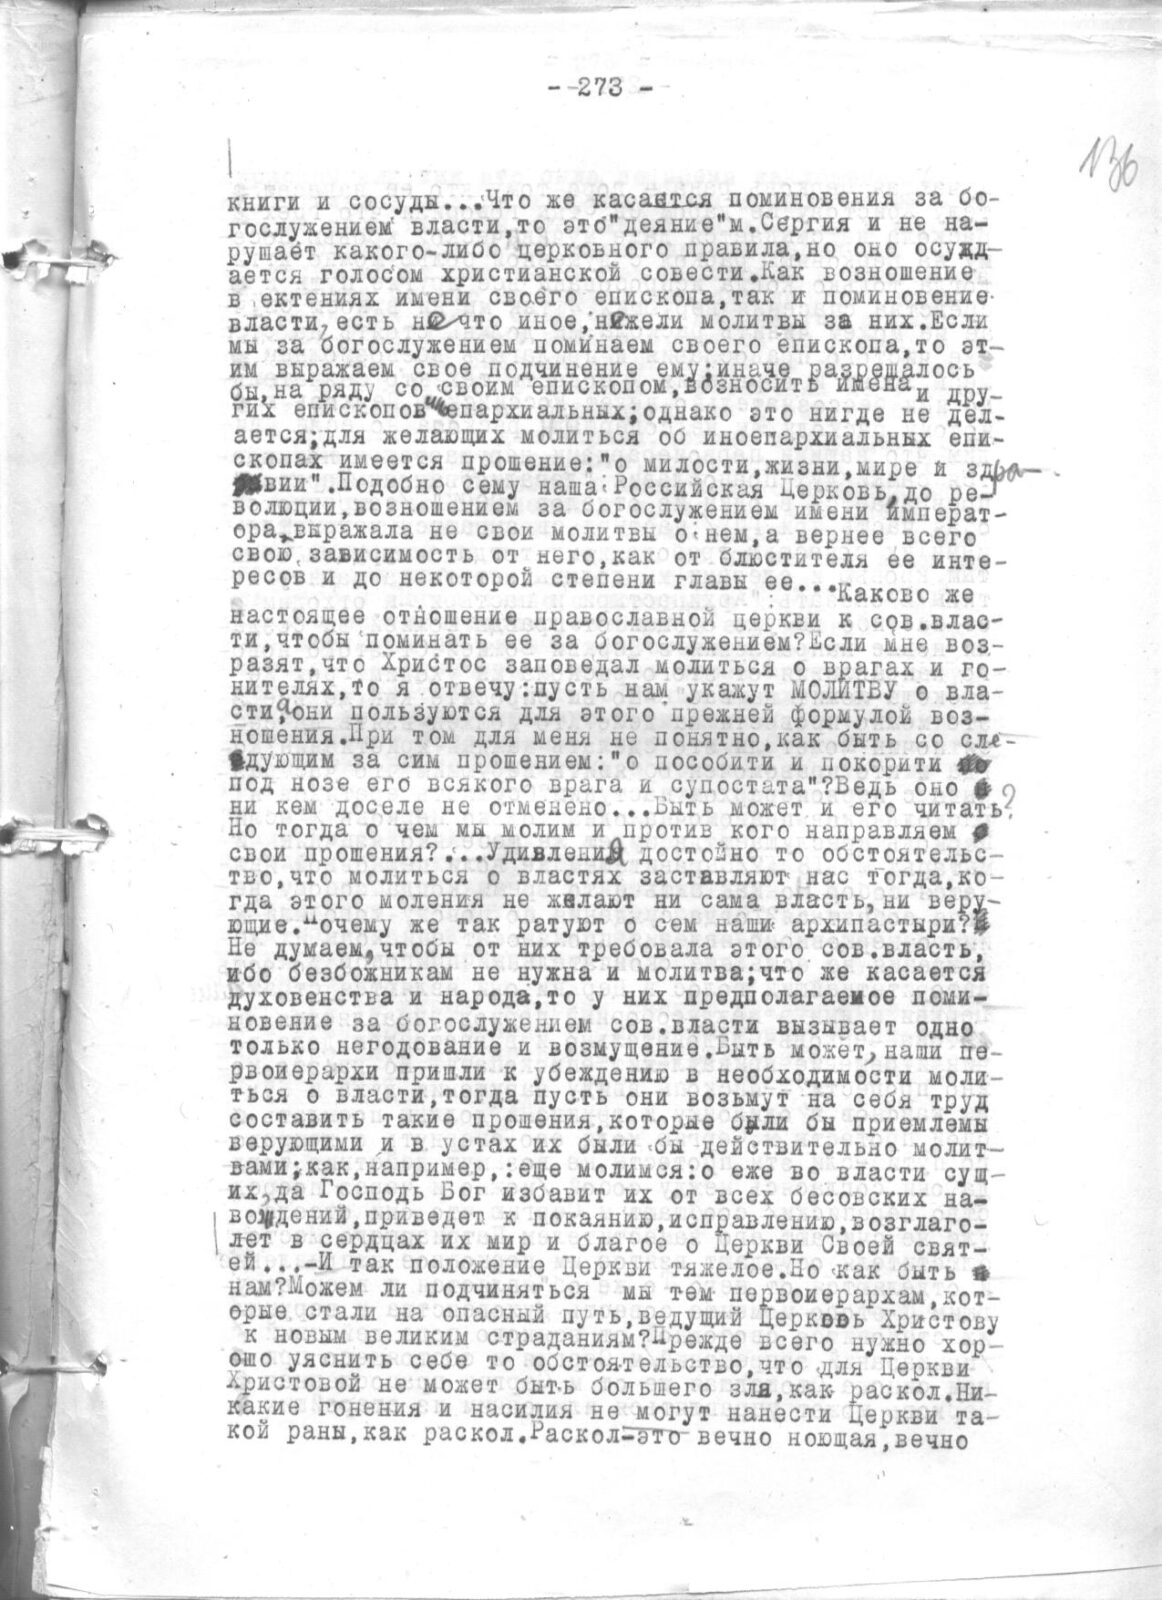 Второе письмо изгнанников с Ангары (Весна 1928 г.)